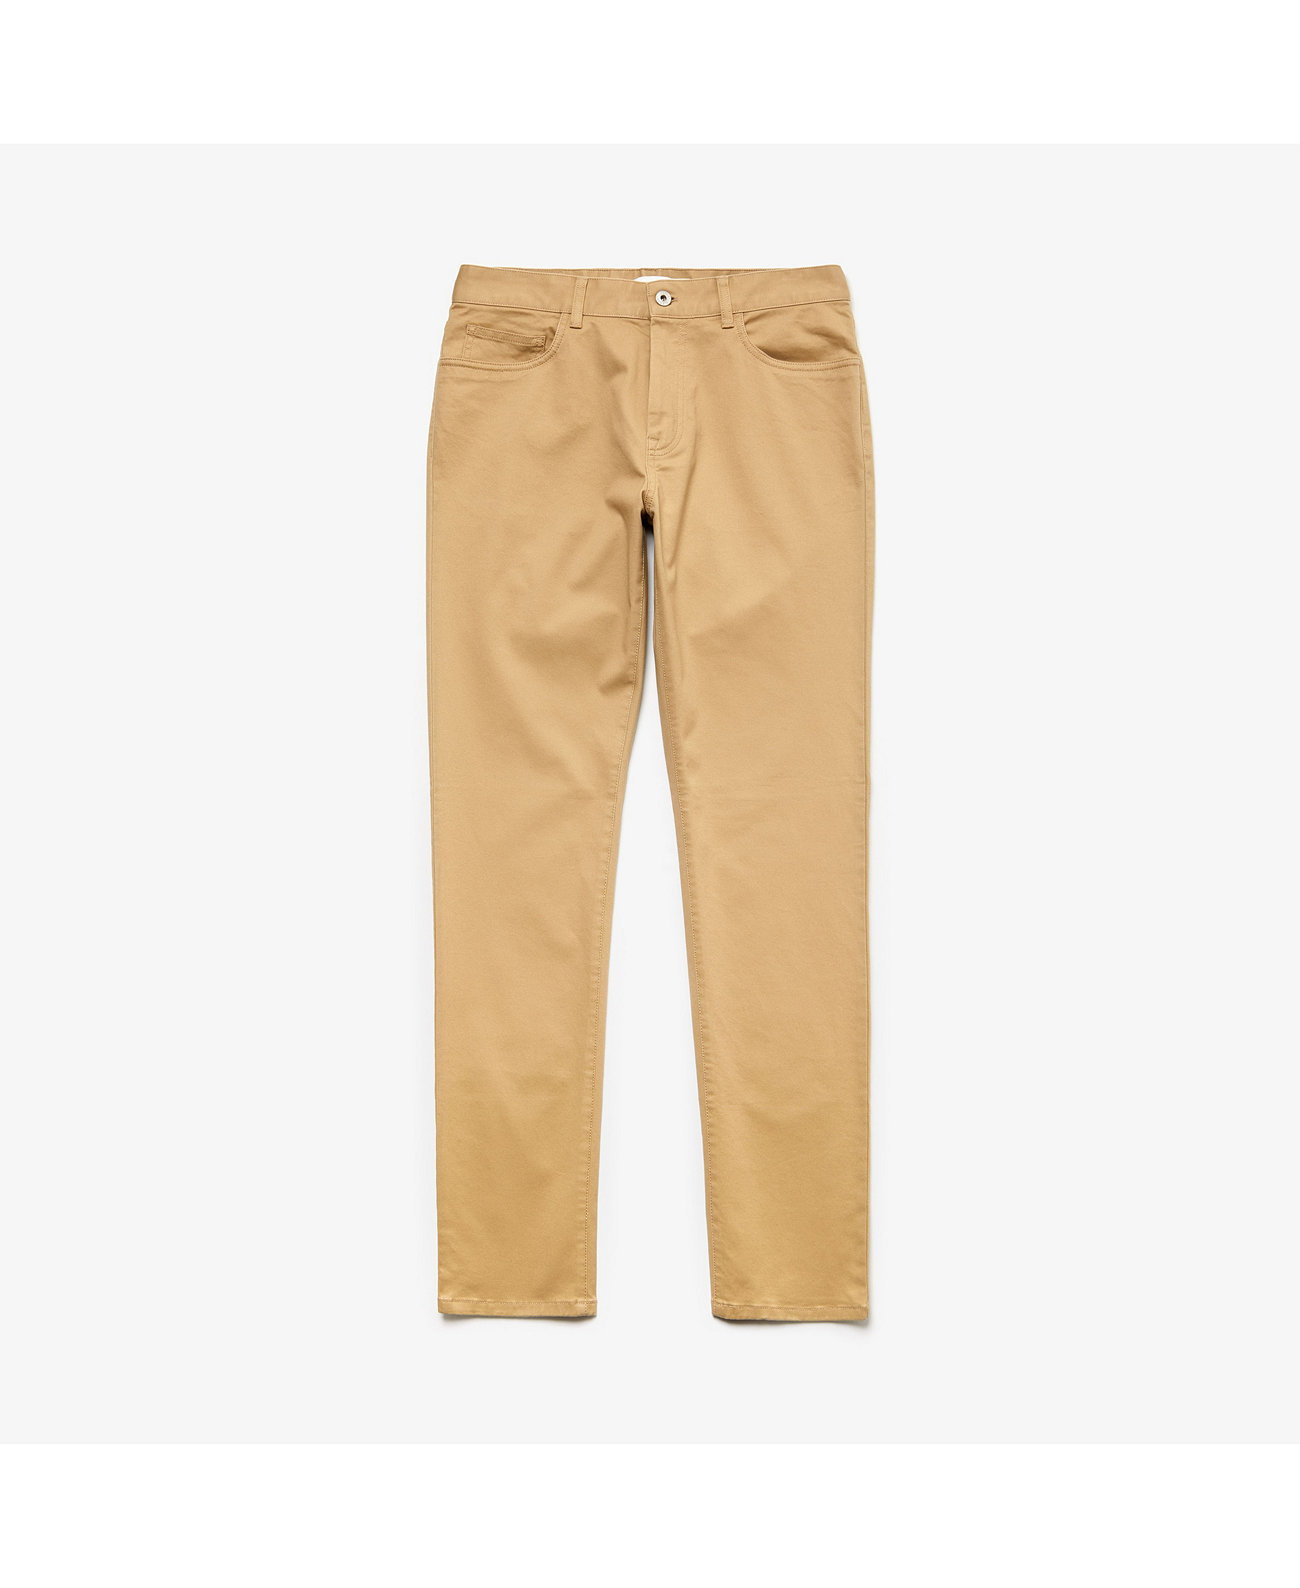 Мужские брюки чинос из стрейч-габардина с 5 карманами и приталенным кроем Lacoste